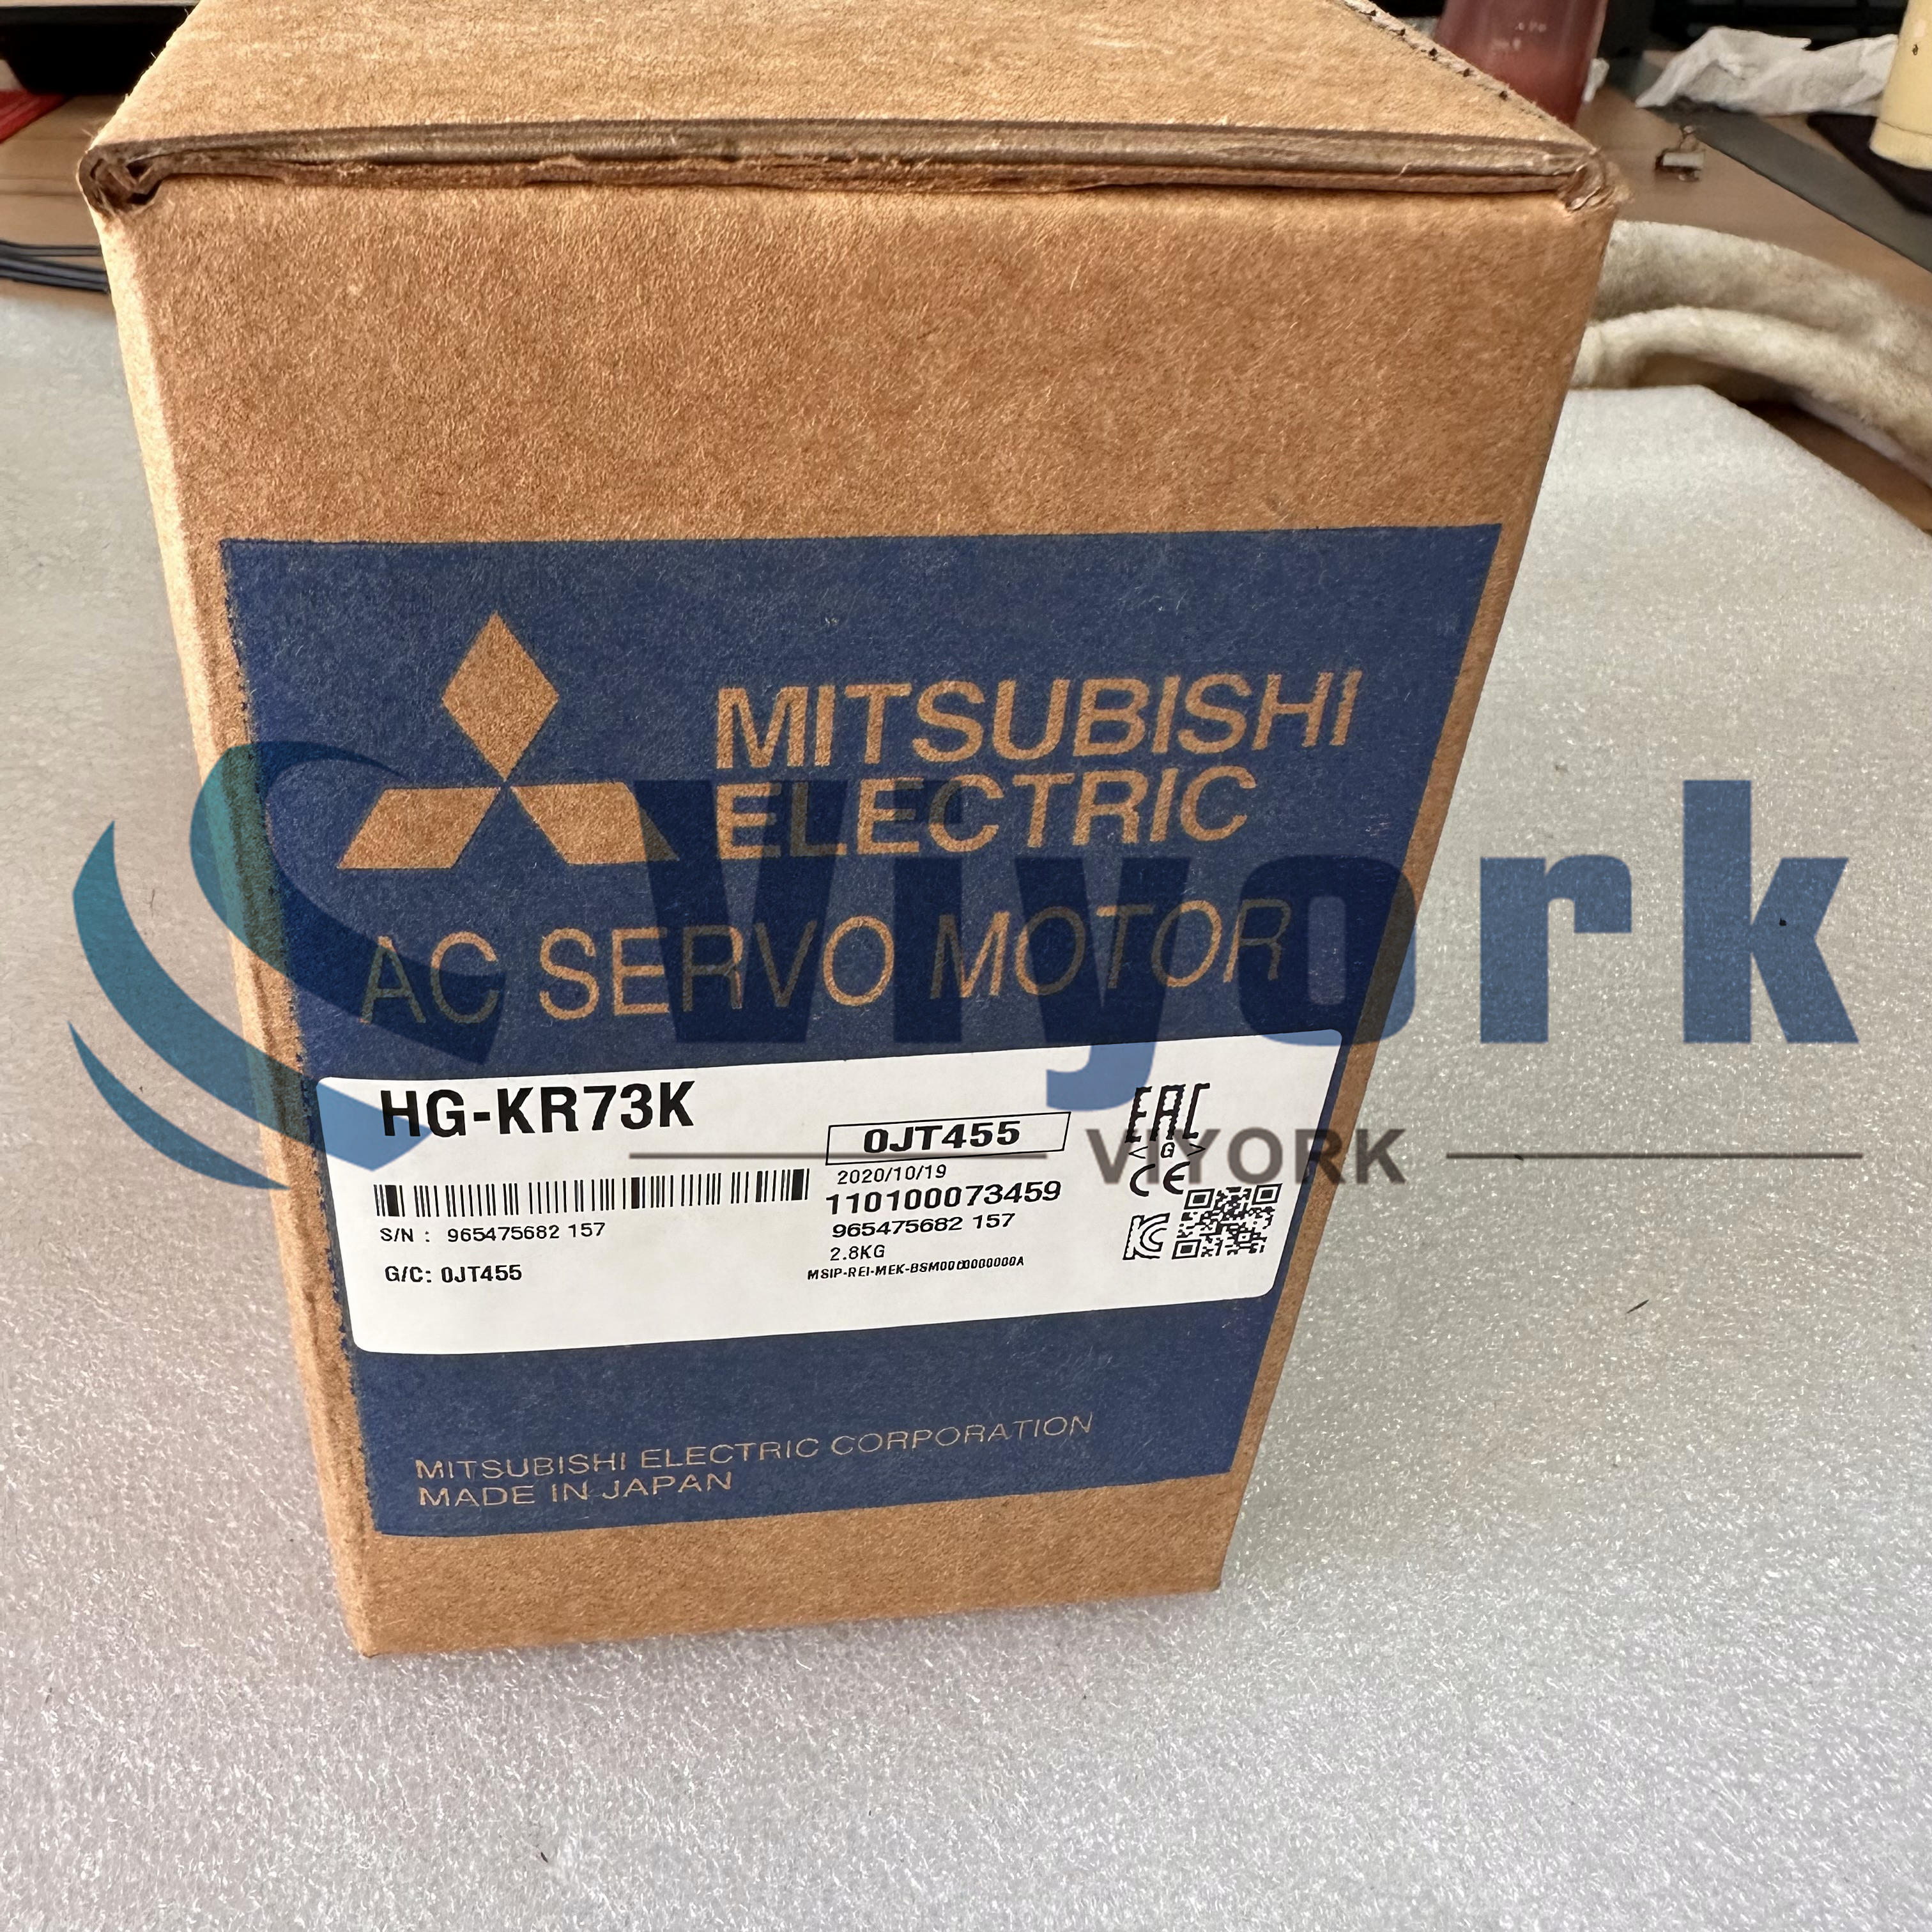 Mitsubishi HG-KR73K AC SERVO MOTOR 750W 3KRPM W/KEY NEW